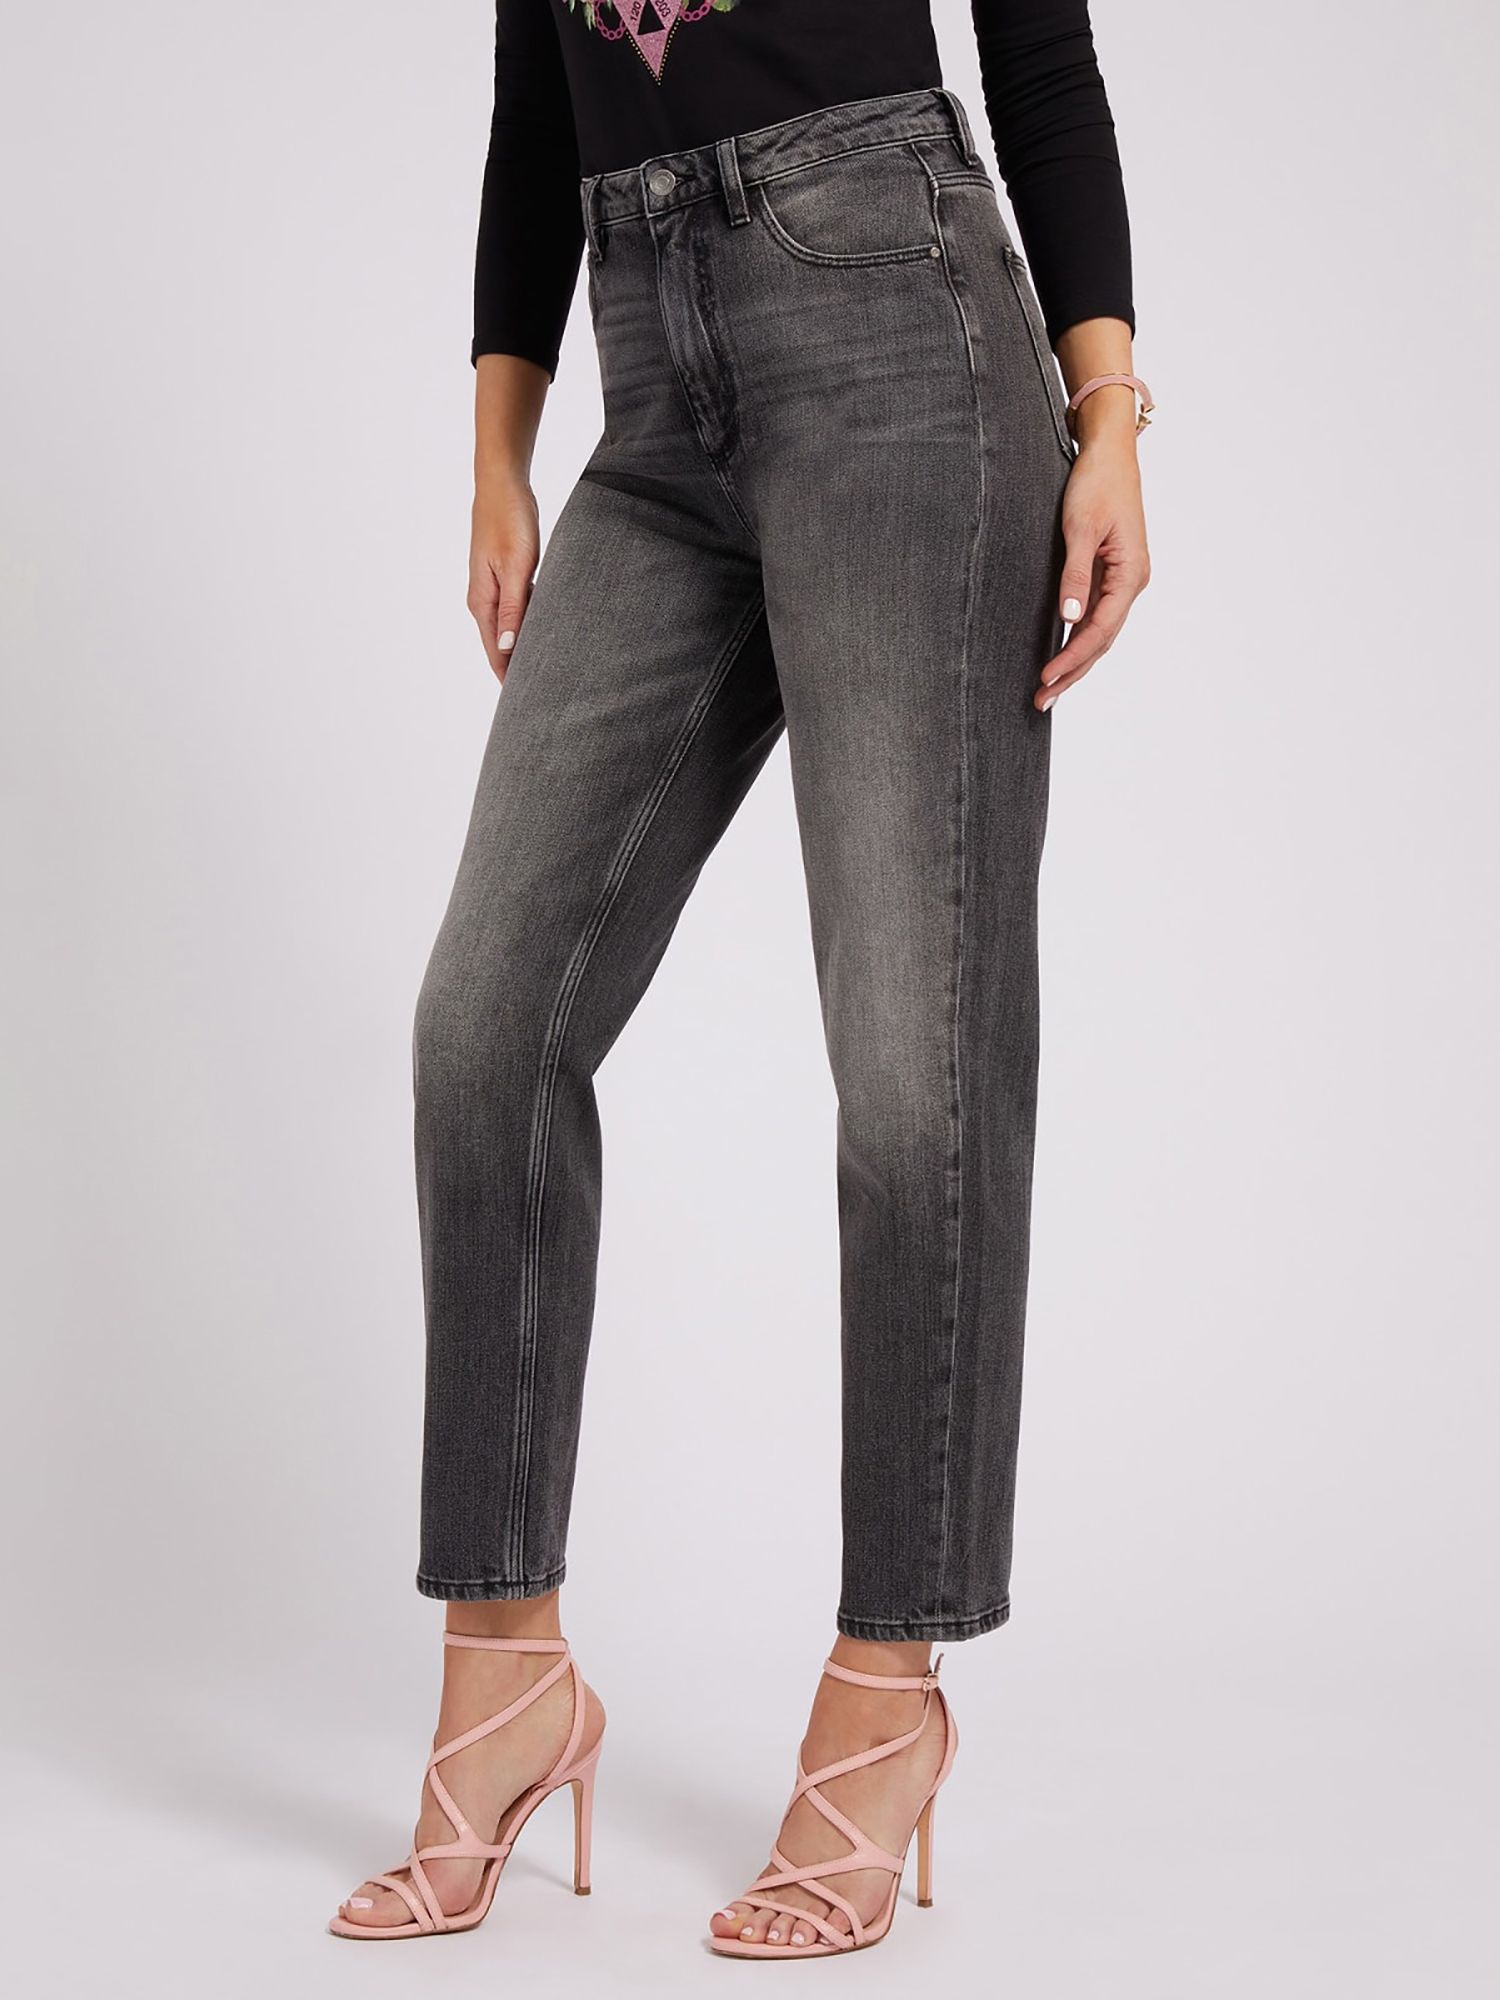 GUESS Mom Fit Denim Jeans, Dark Grey at John Lewis & Partners